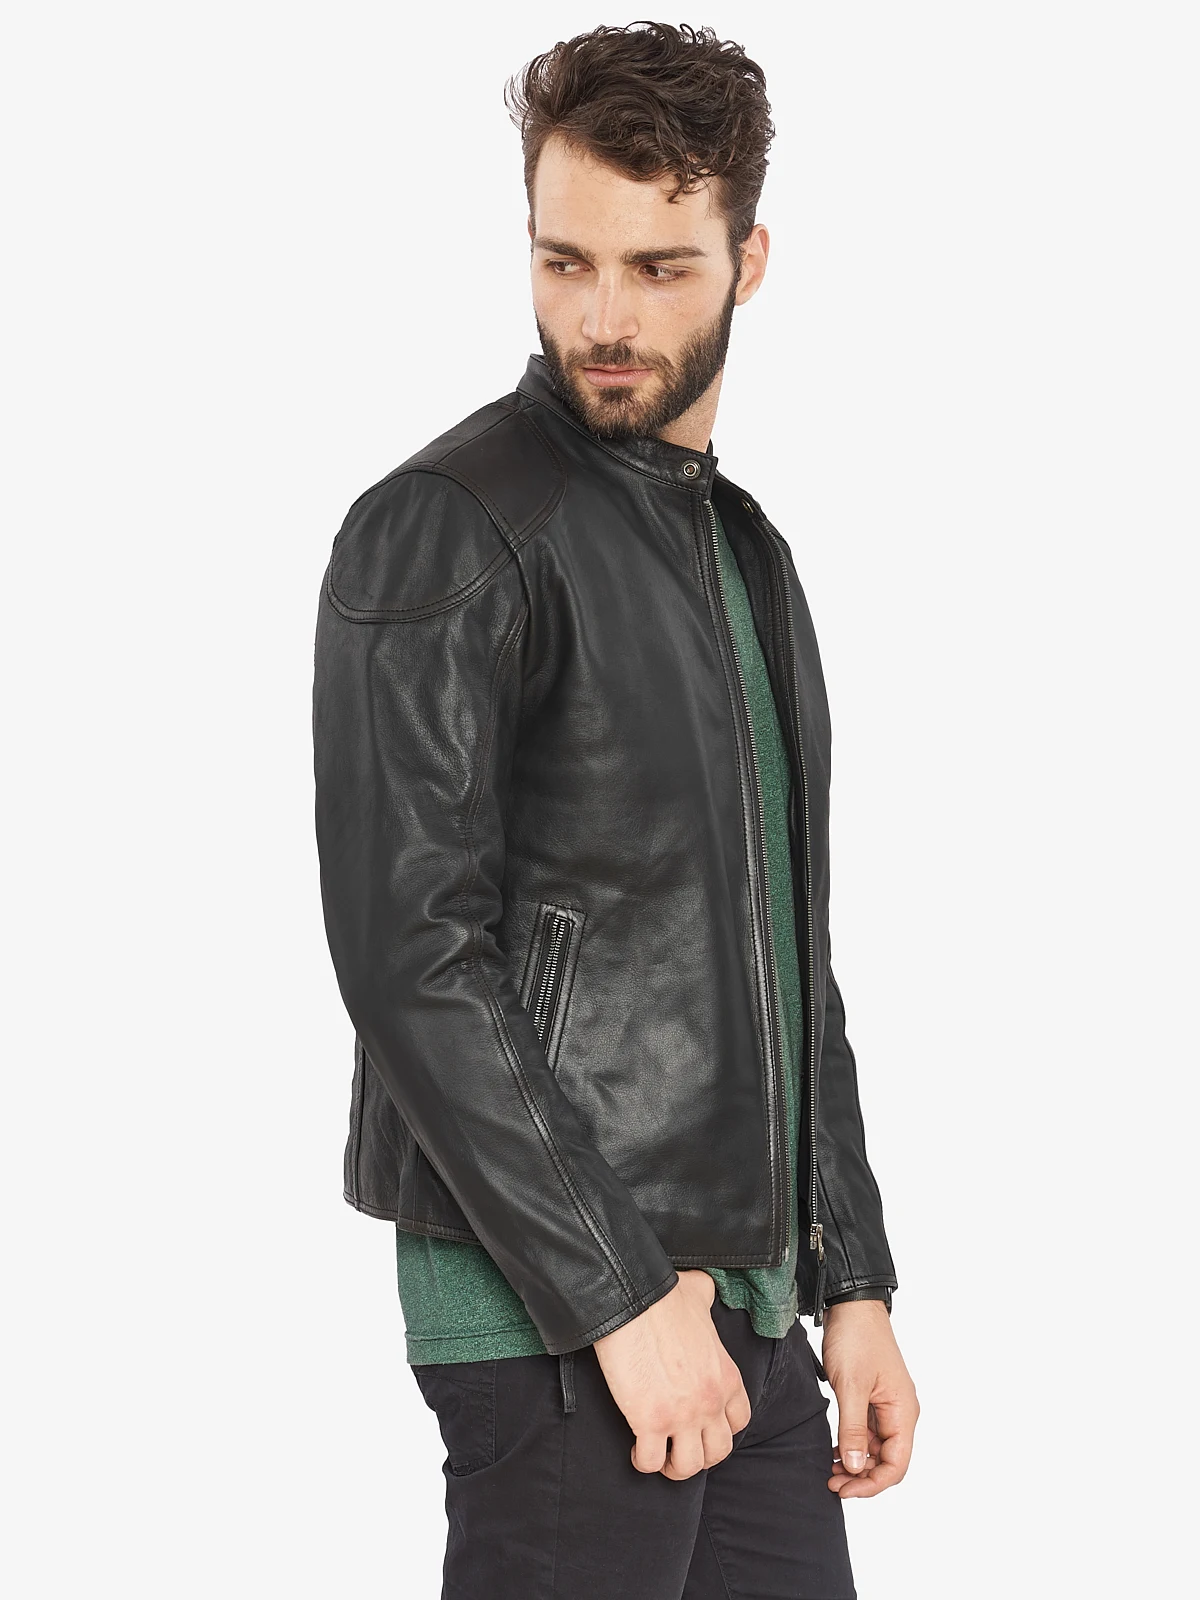 VAINAS, европейский бренд, мужская куртка премиум-класса из буйвола, кожаная мужская зимняя мотоциклетная куртка из натуральной кожи, байкерские куртки ROMEO